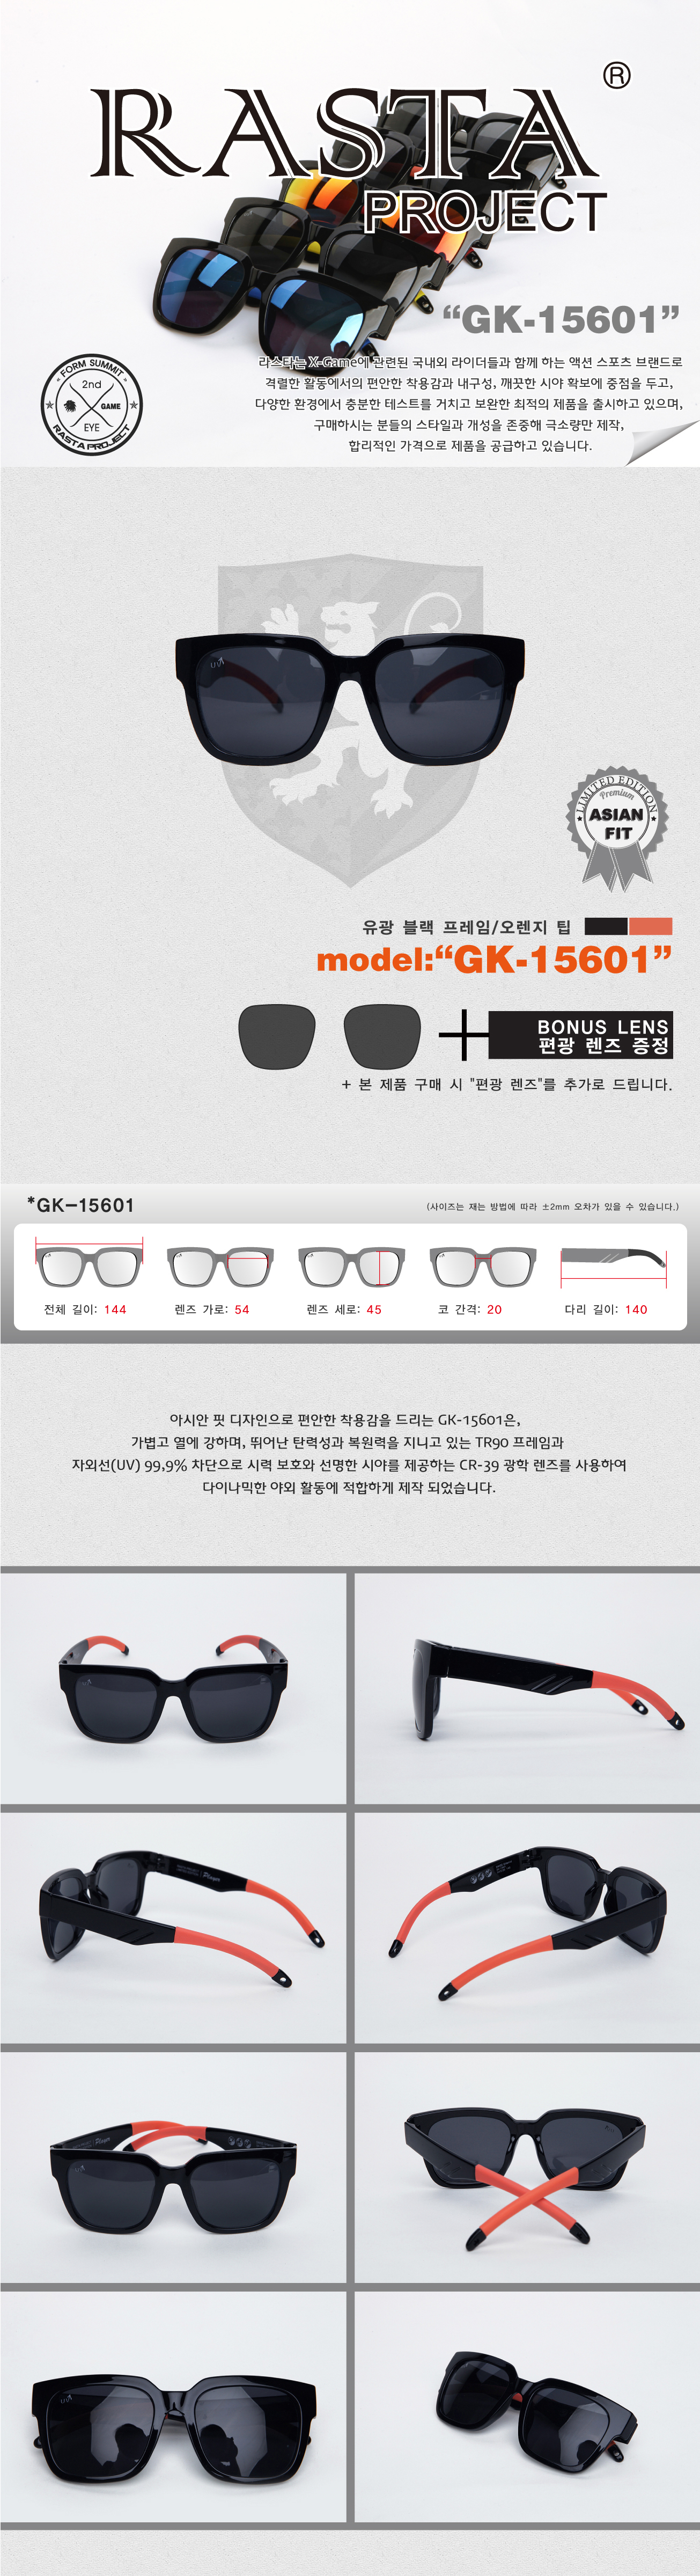 GK-15601 Gloss Black/Orange